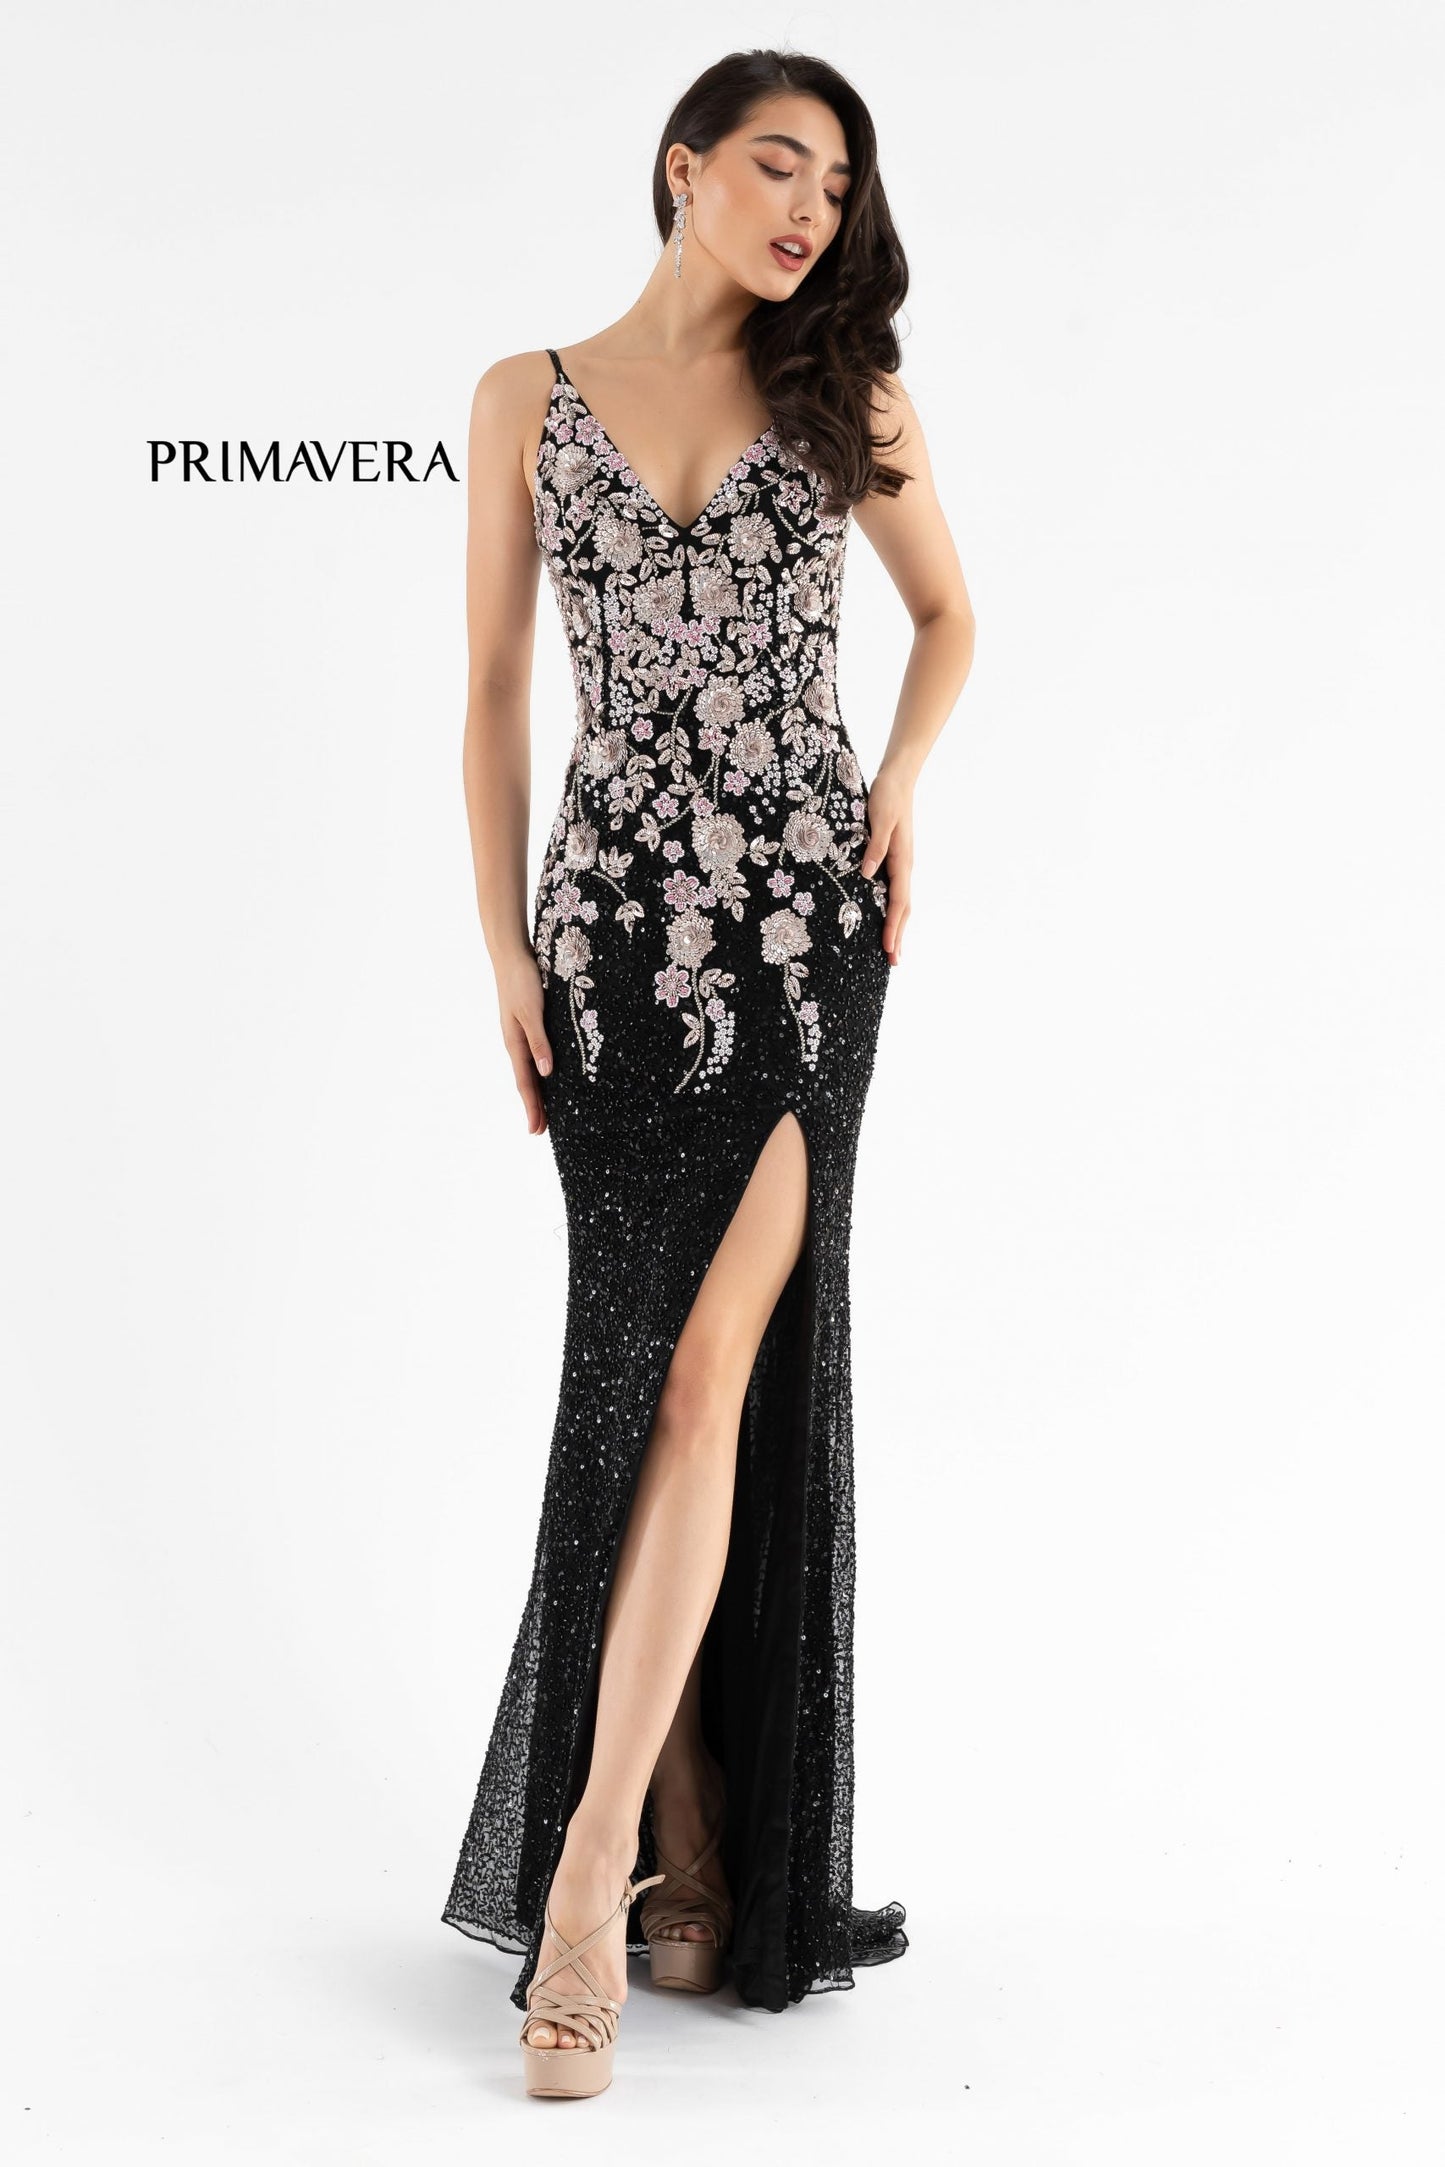 Primavera Couture 3730 Size 4 Prom Dress Flower Bodice Sequins V Neckline Slit Mid Back